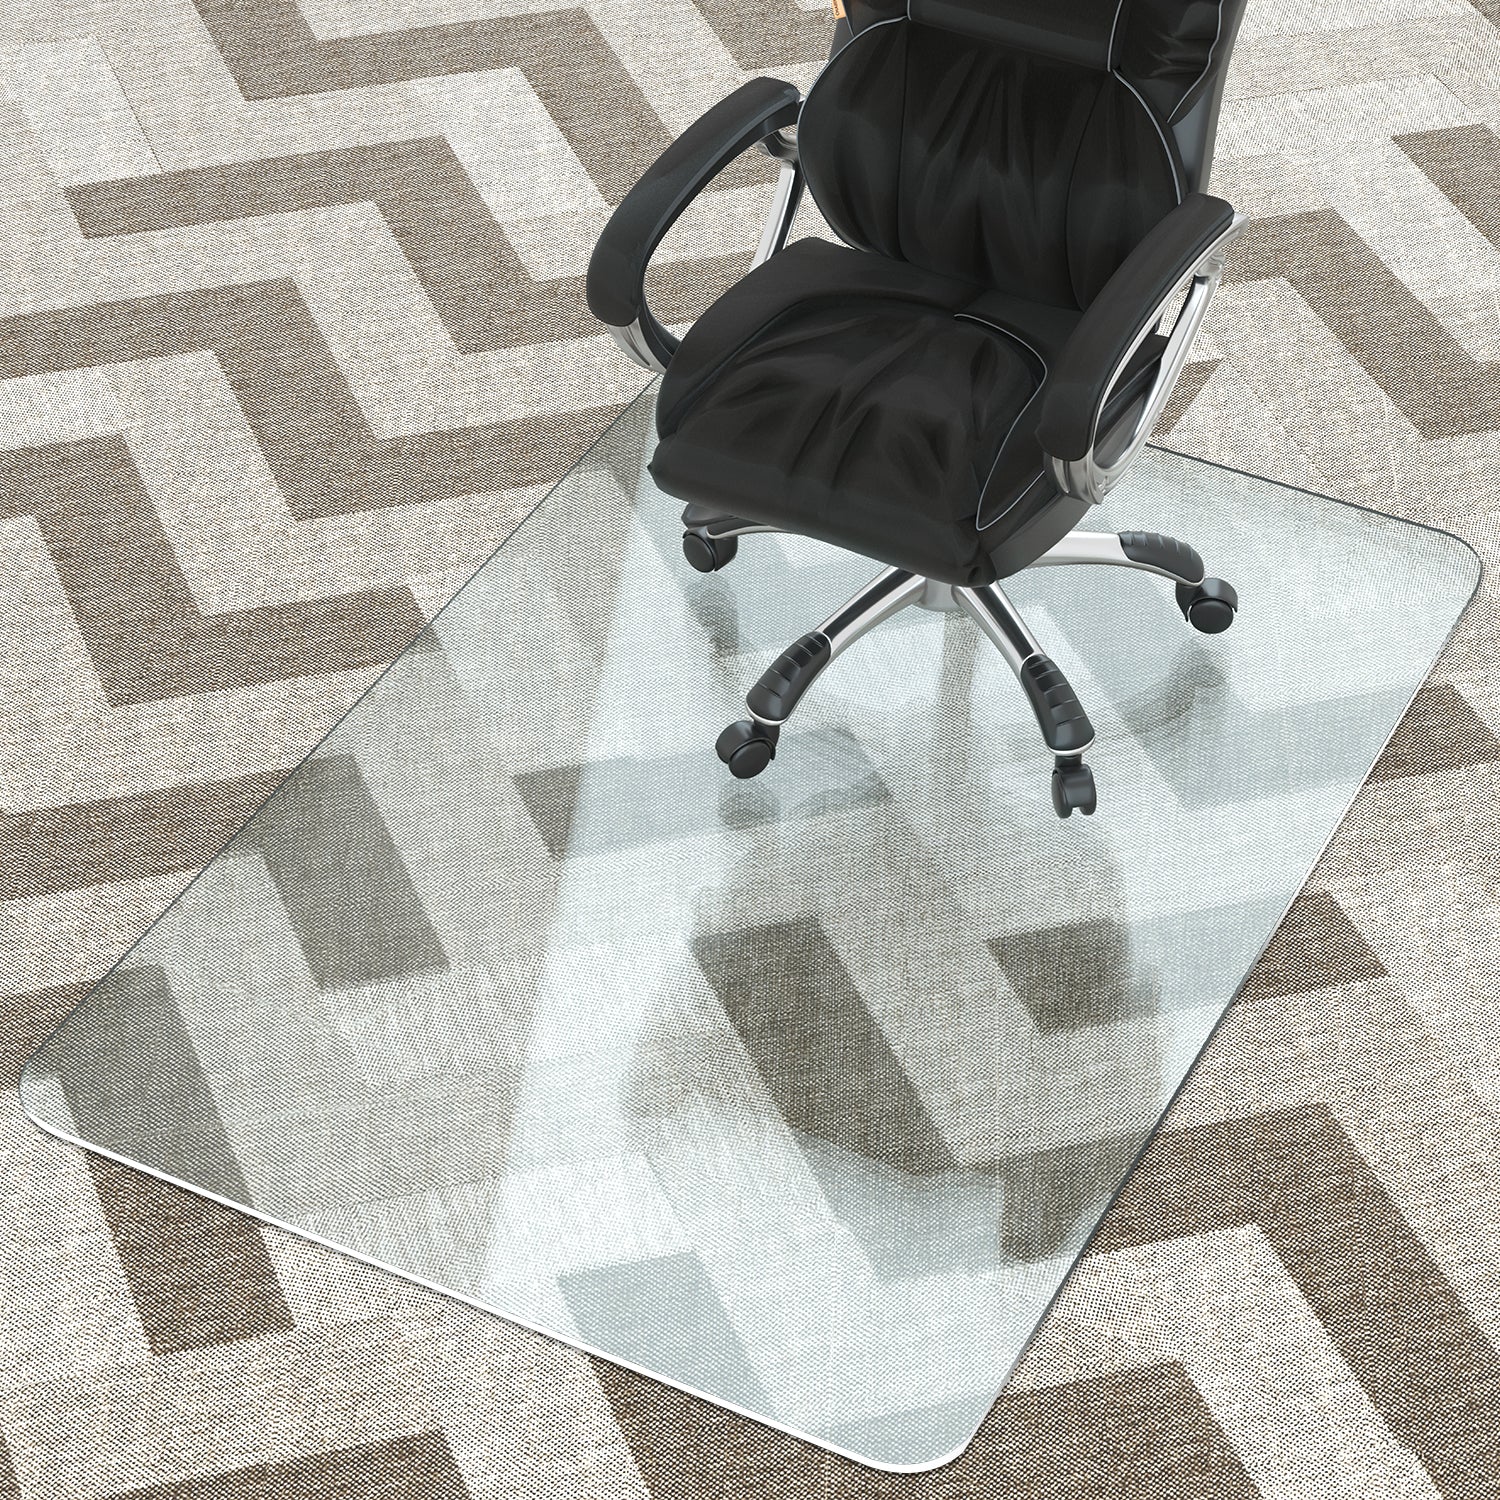 Aothia Office Clear Floor Mat Hardwood Floor Chair Pad Product Description